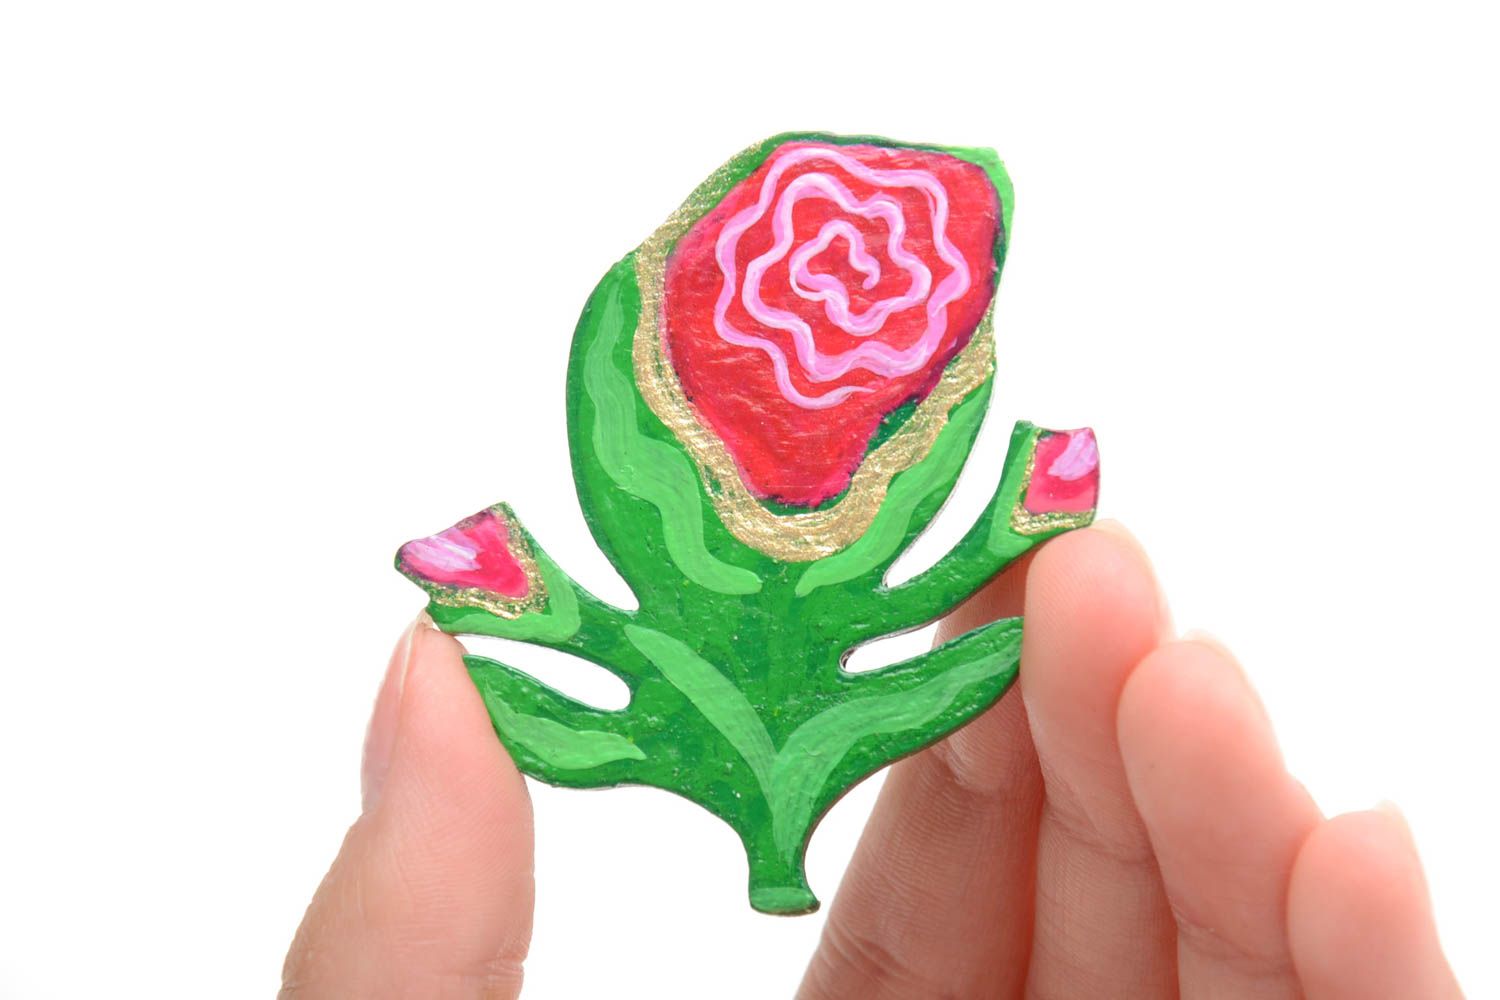 Handmade künstlerische Brosche Blume aus Holz mit Acrylfarben bemalt bunt schön foto 5